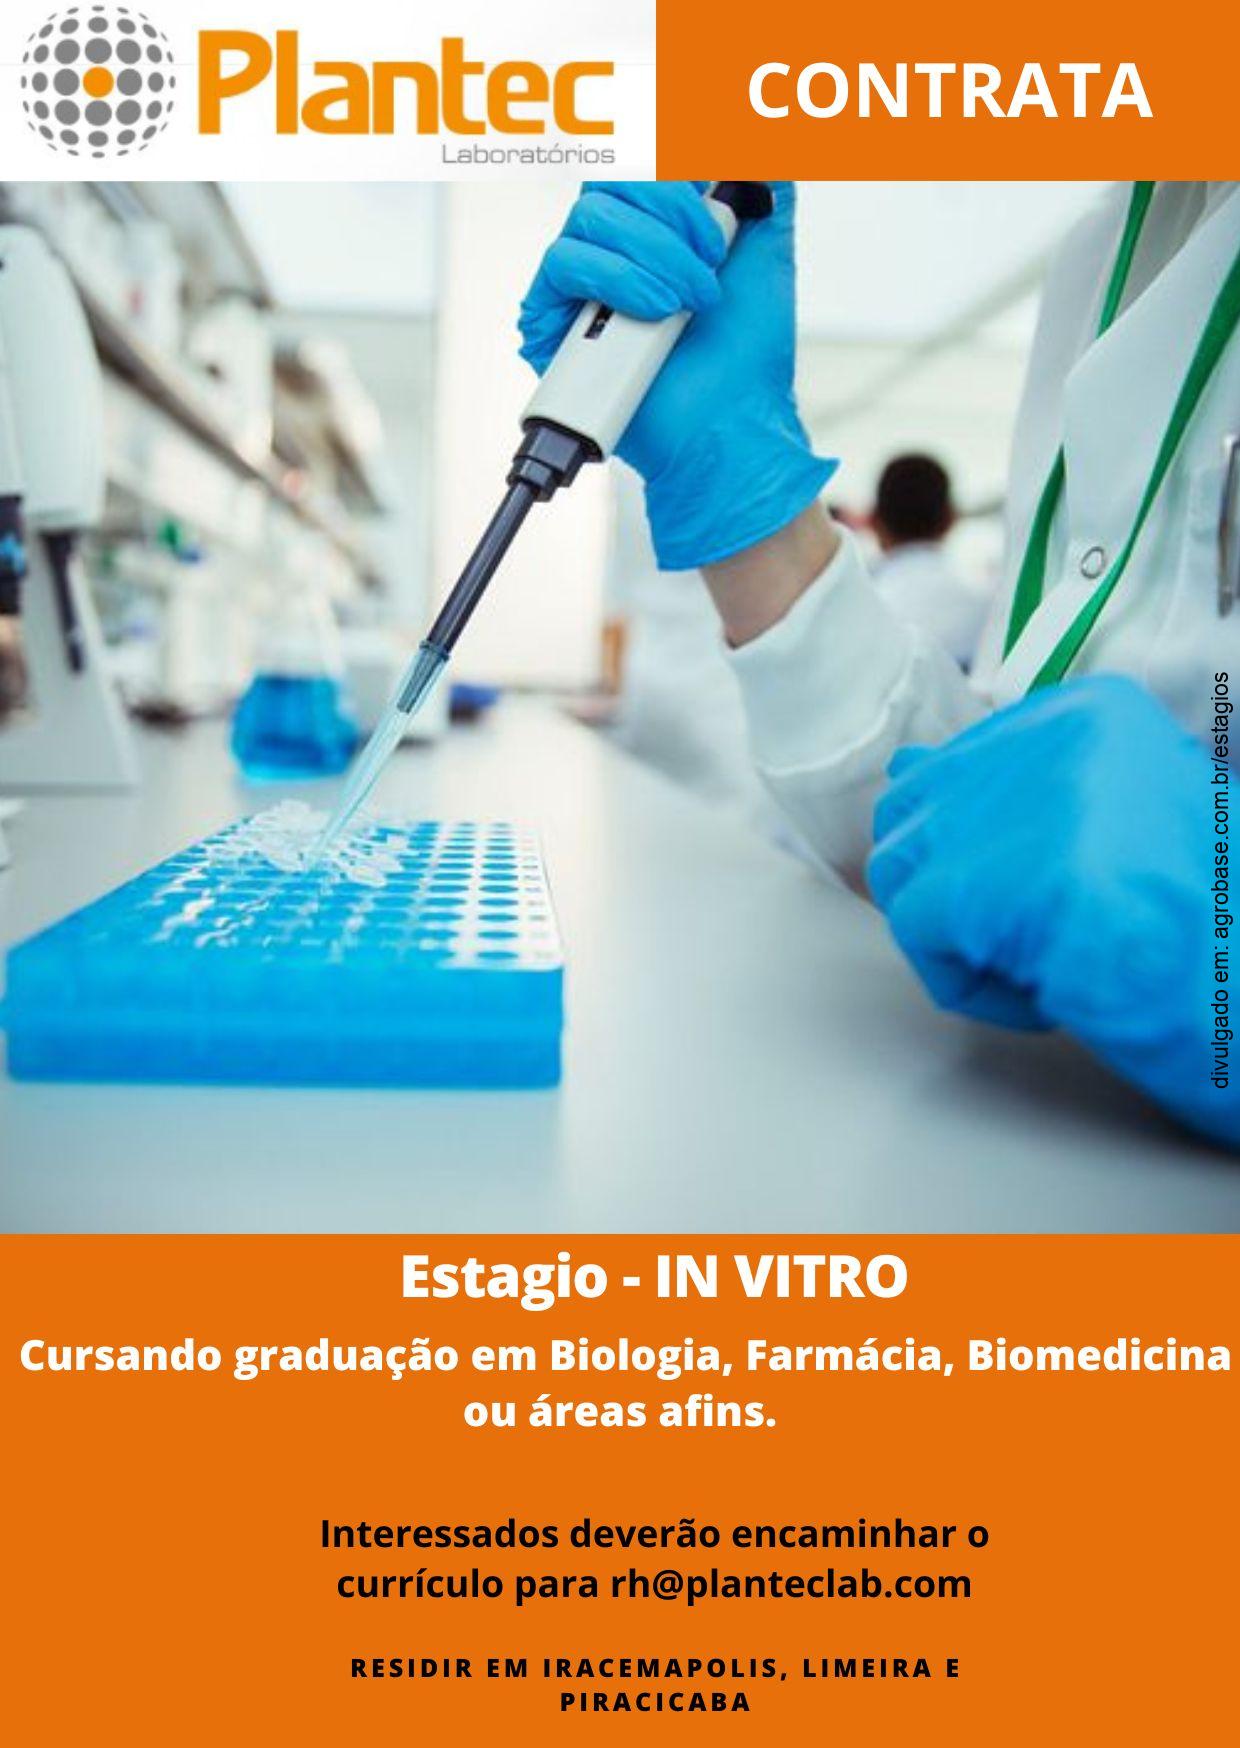 Estagiário in vitro – Iracemápolis, Limeira ou Piracicaba/SP